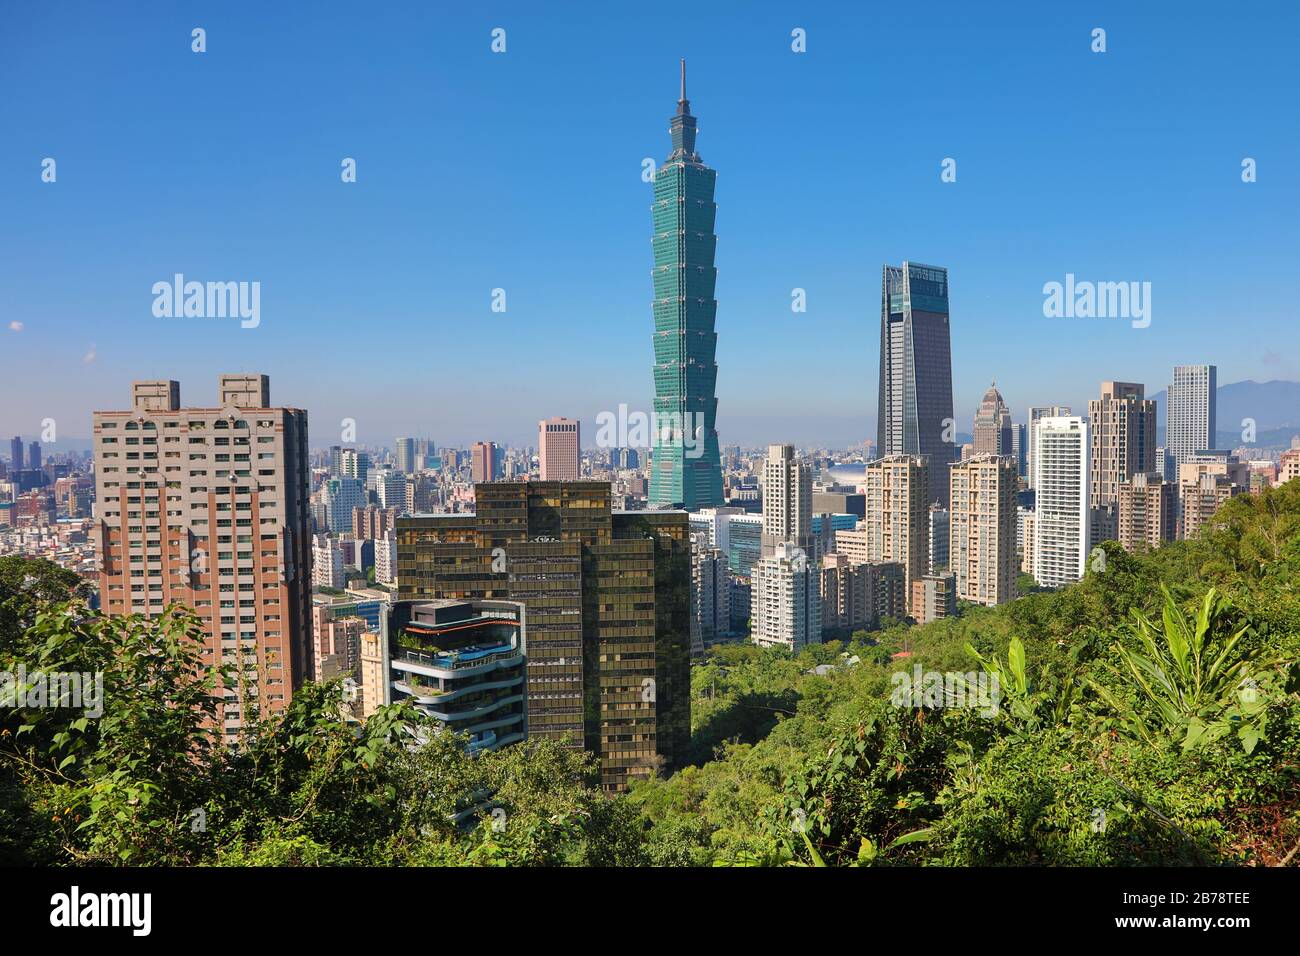 Taipei 101 skyscraper in Xinyi District, Taipei, Taiwan Stock Photo